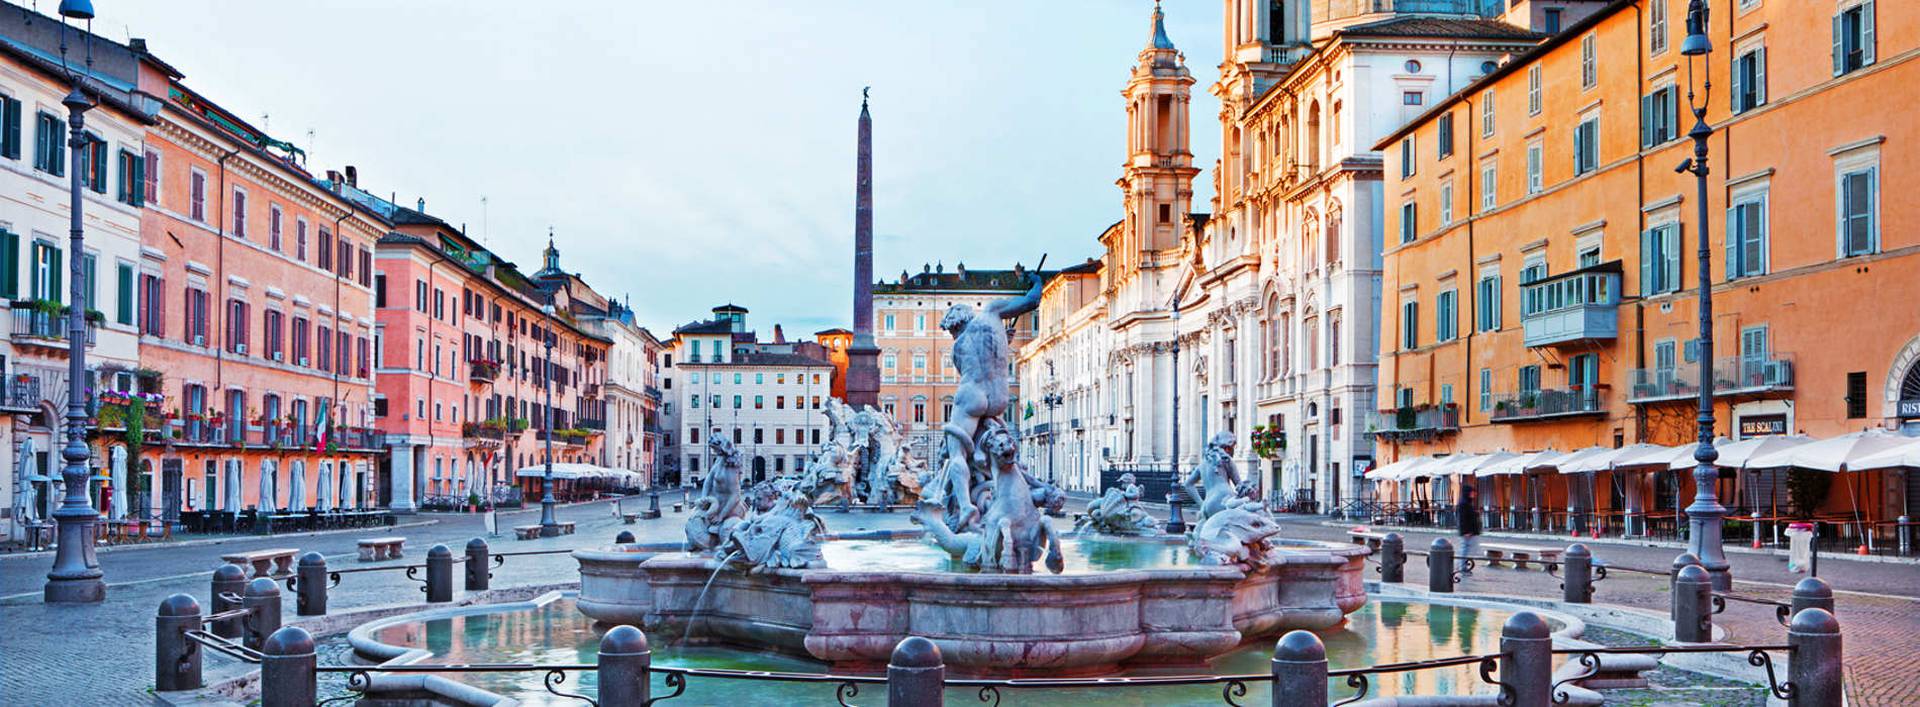 Enjoy Rome with Leonardi Hotels Leonardi Hotels